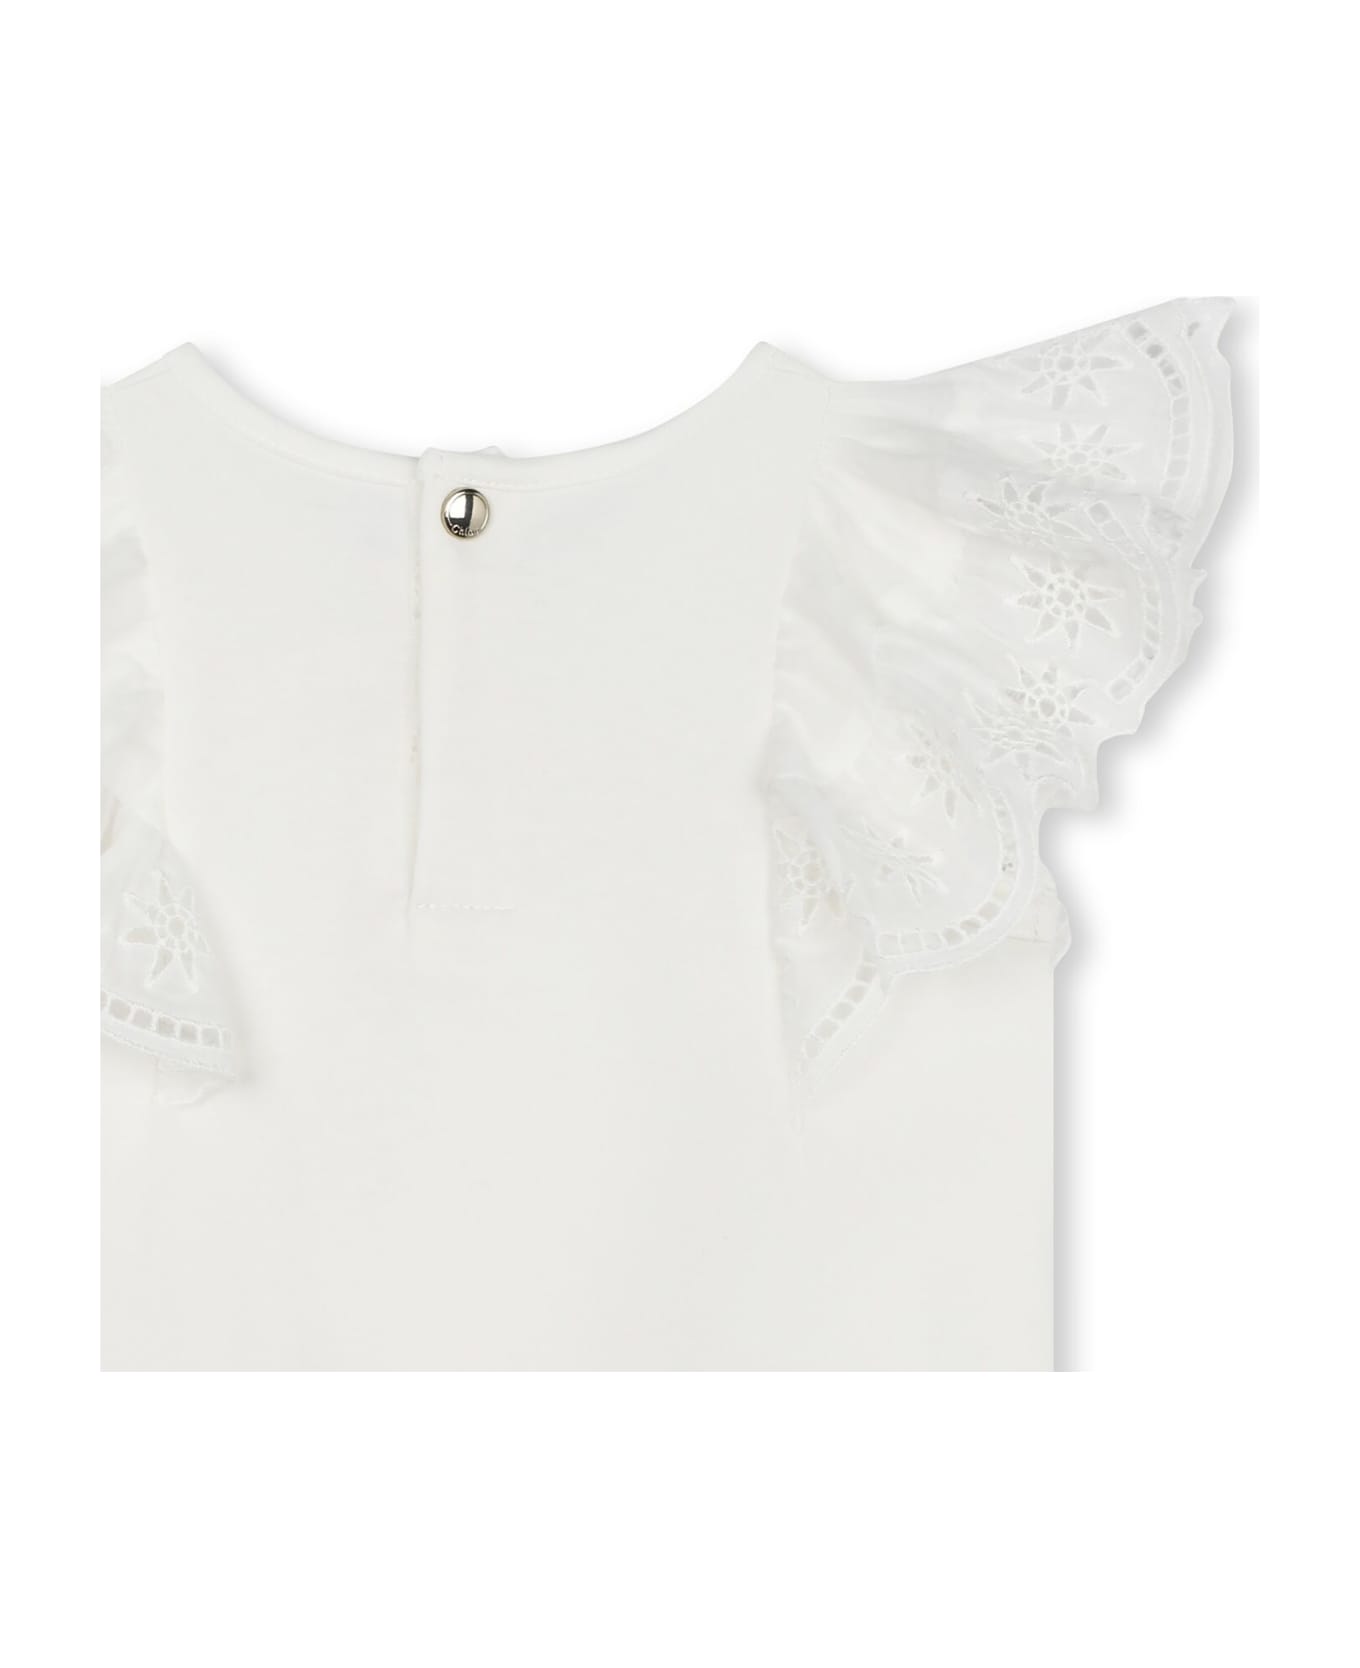 Chloé White T-shirt For Baby Girl - White